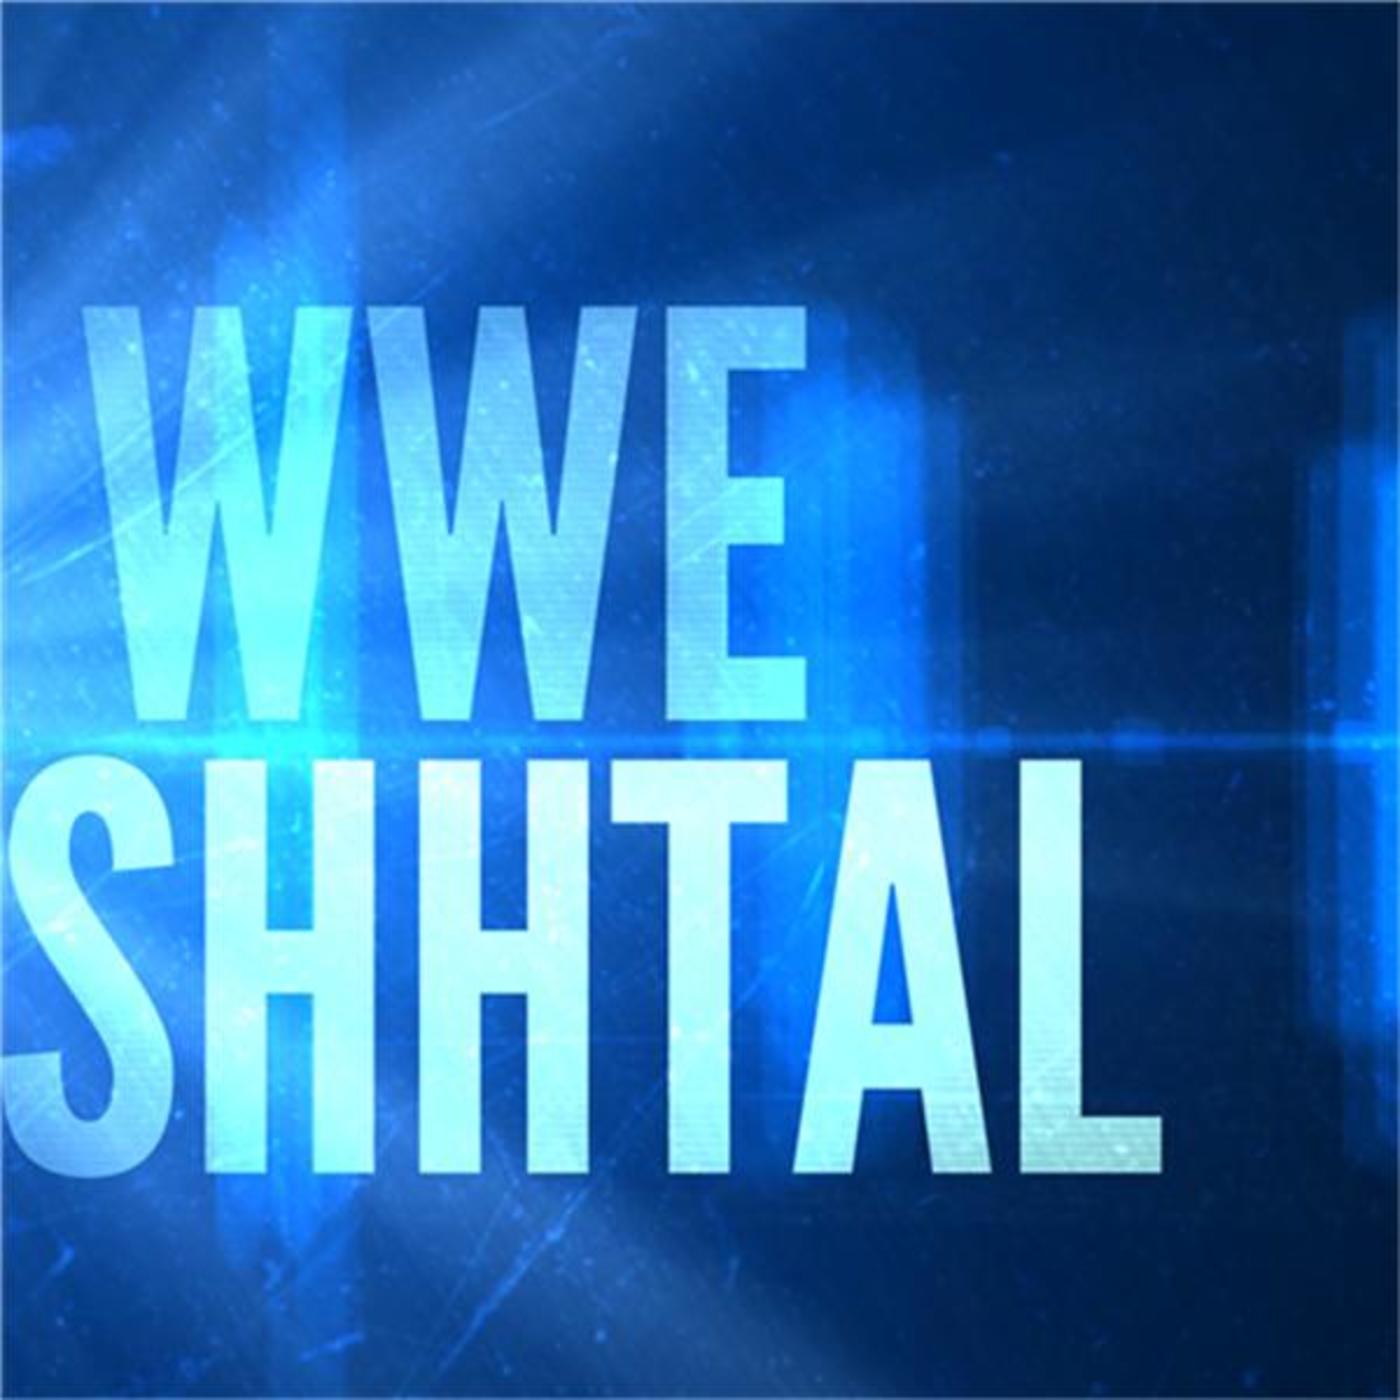 WWE SHHTAL